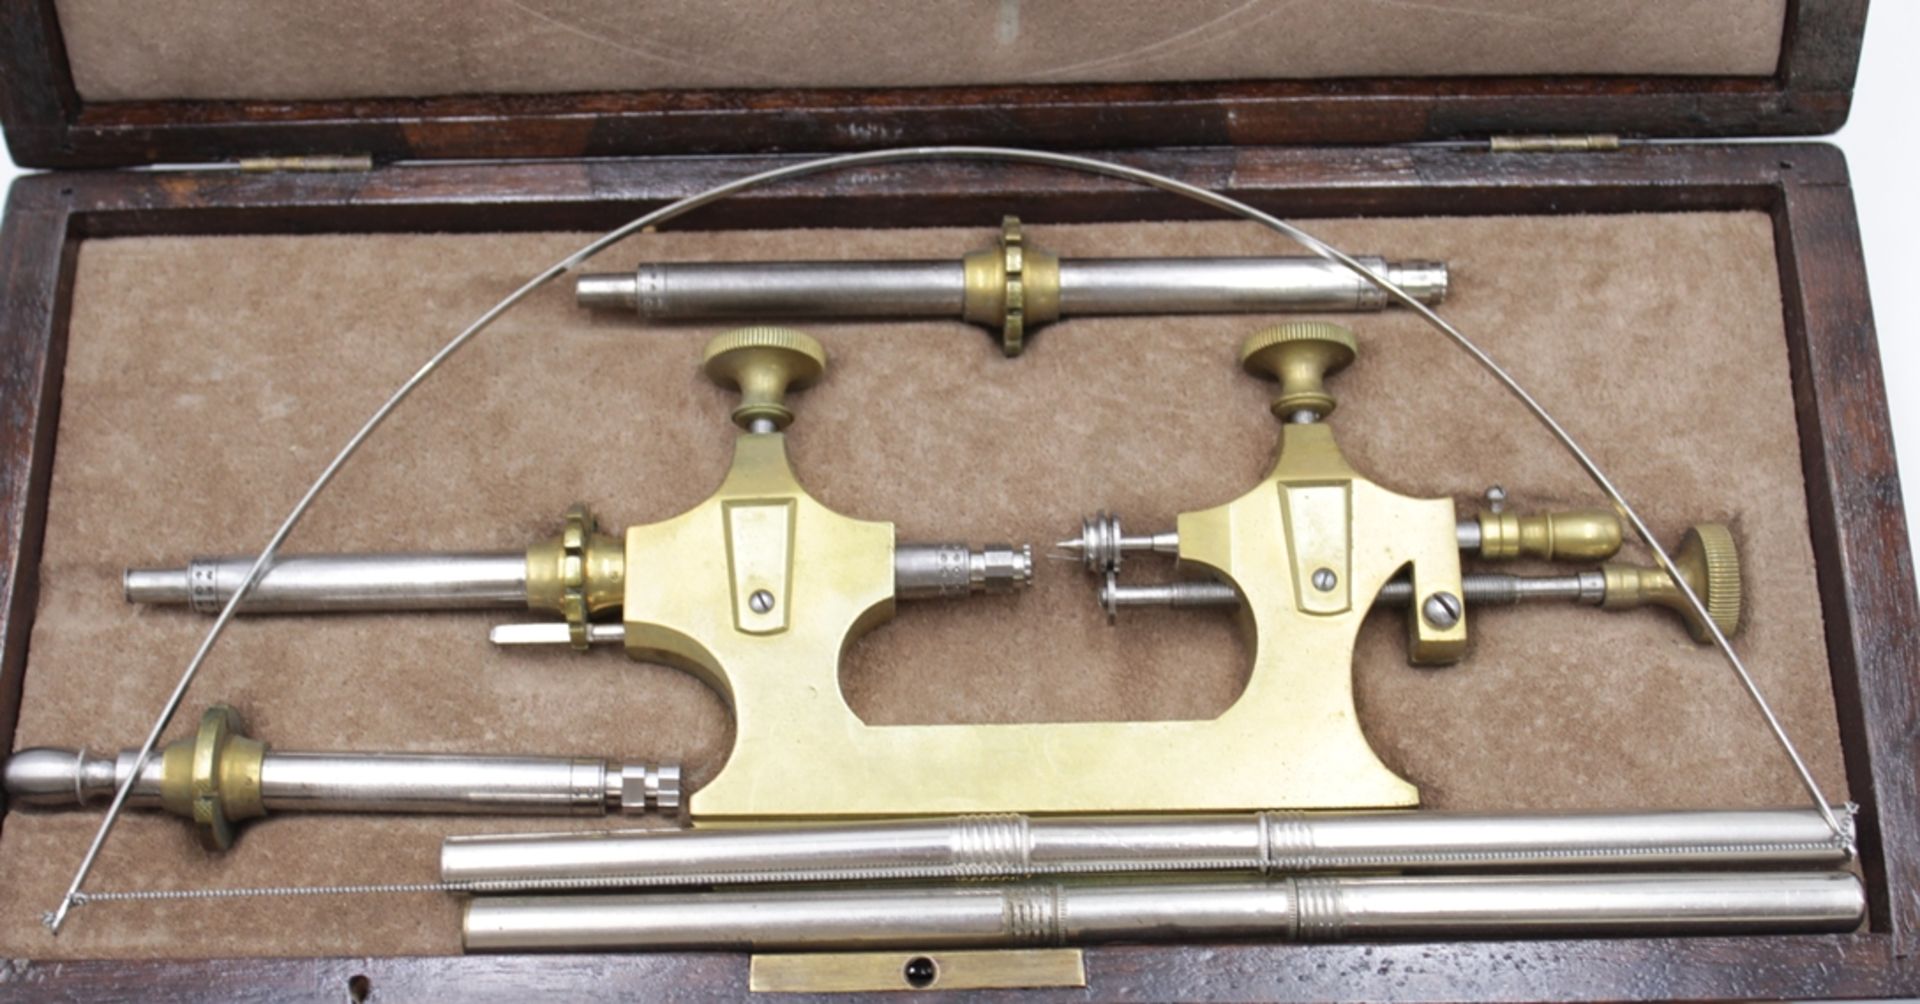 Zapfenrollierstuhl, Uhrmacherwerkzeug, Anf. 20. Jhd., orig. Kasten, H-6,5cmn B-28,2cm T-13,3cm. - Bild 3 aus 5